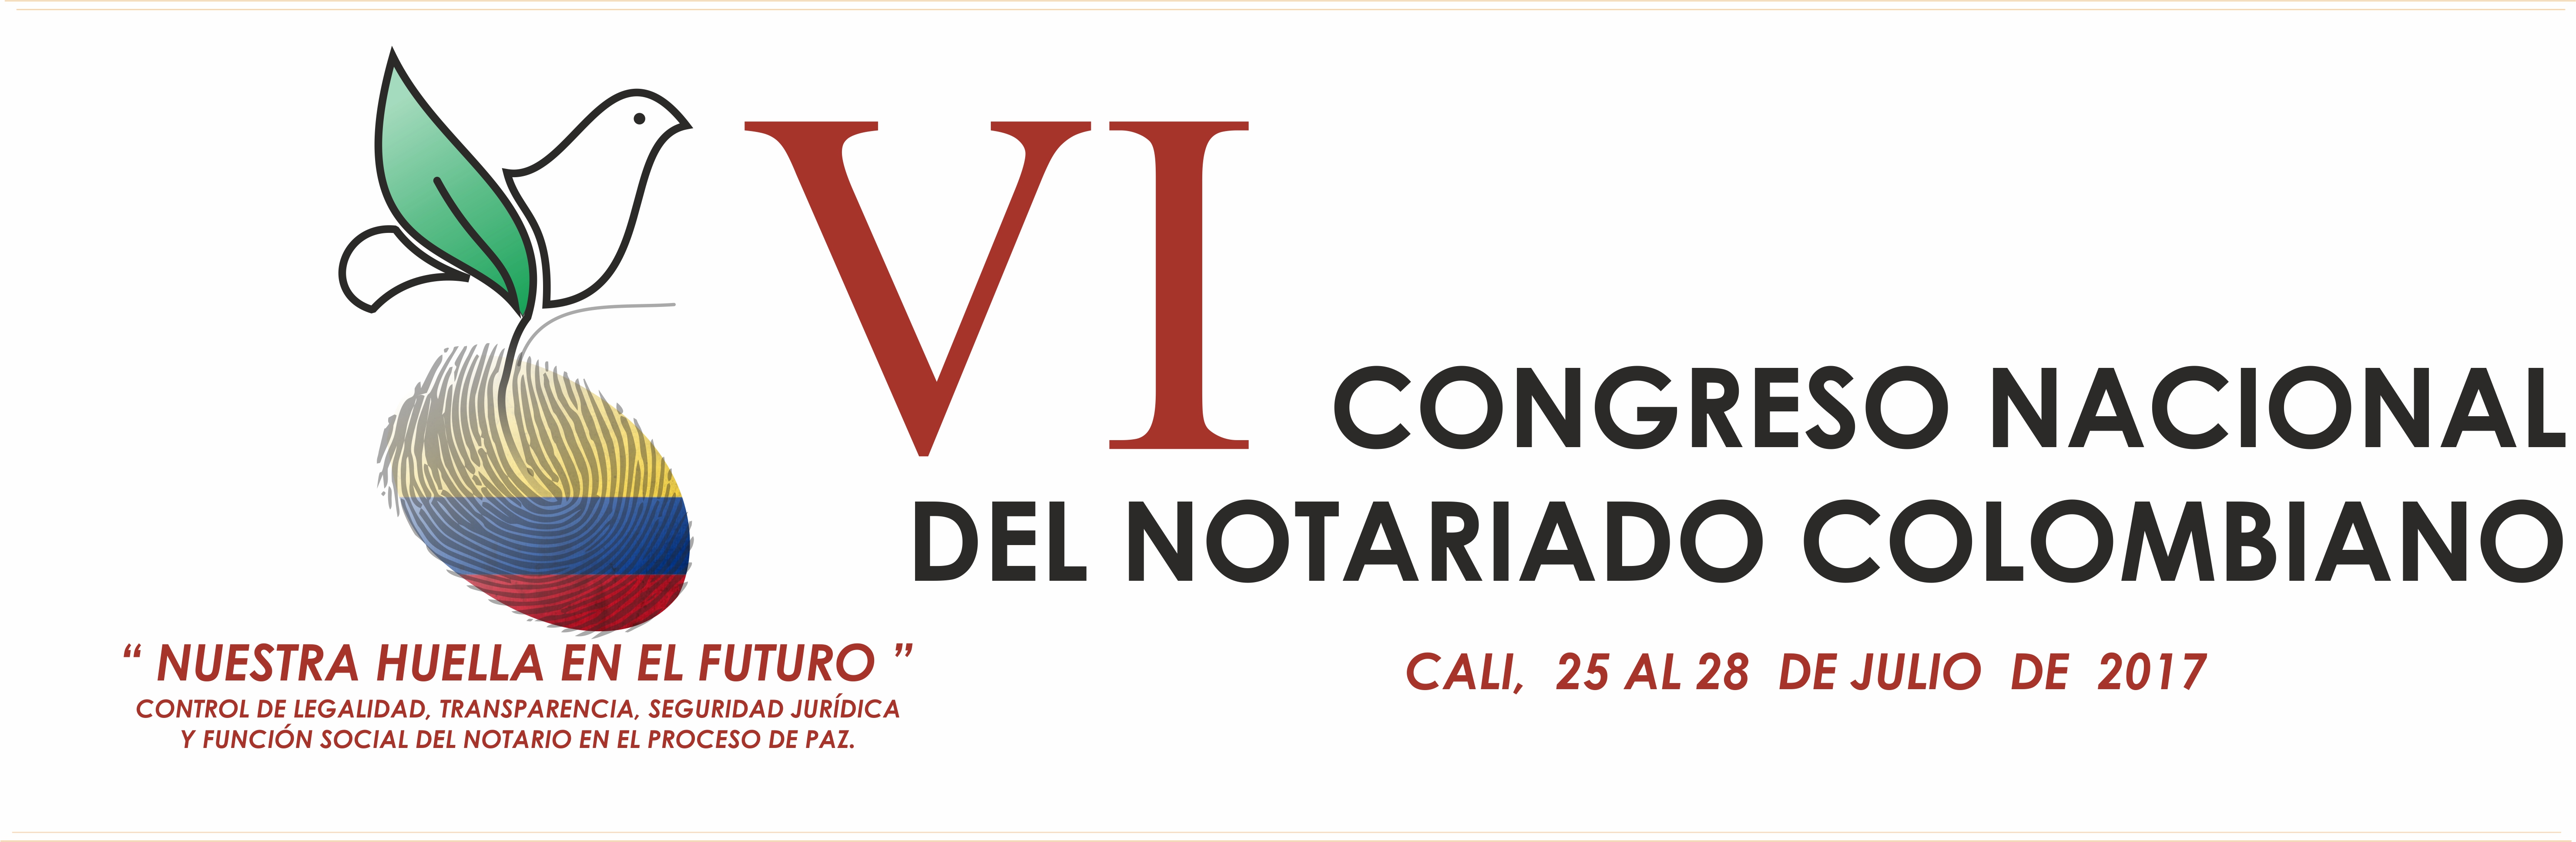 Comenz en Cali el VI Congreso Nacional del Notariado Colombiano.